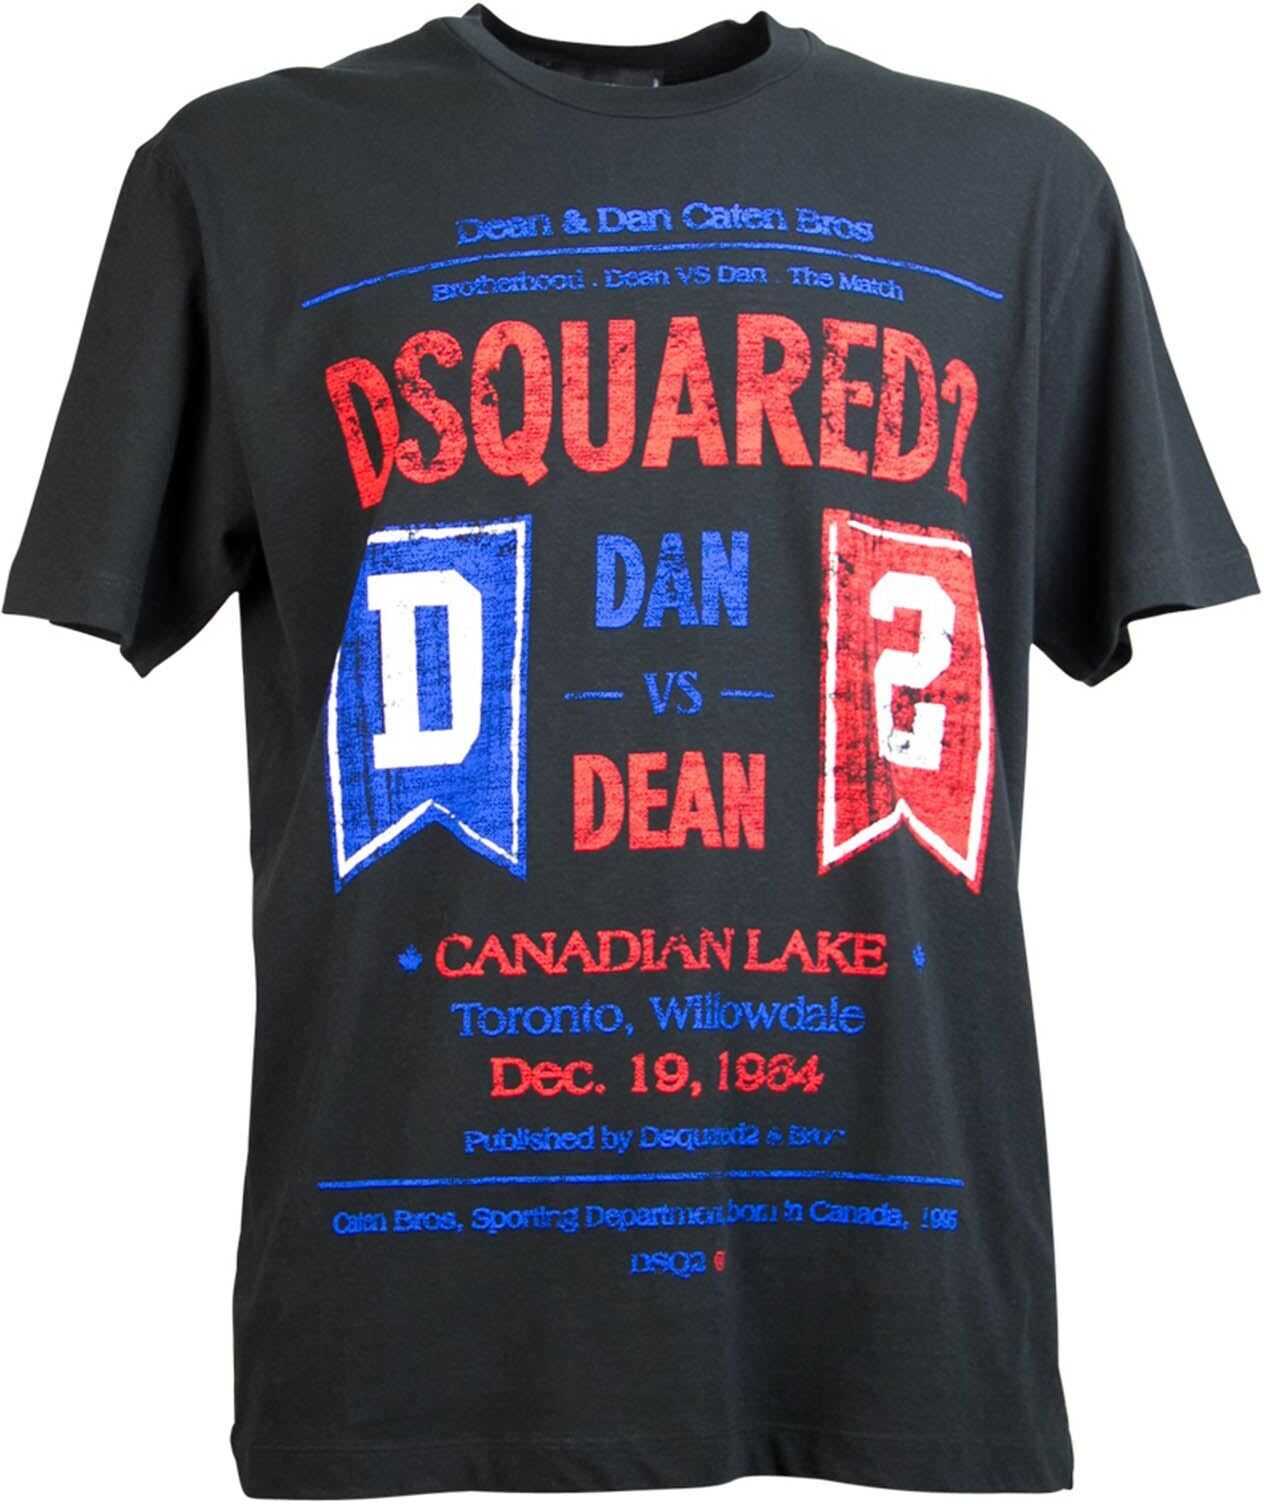 Dan Vs Dean T-Shirt In Black